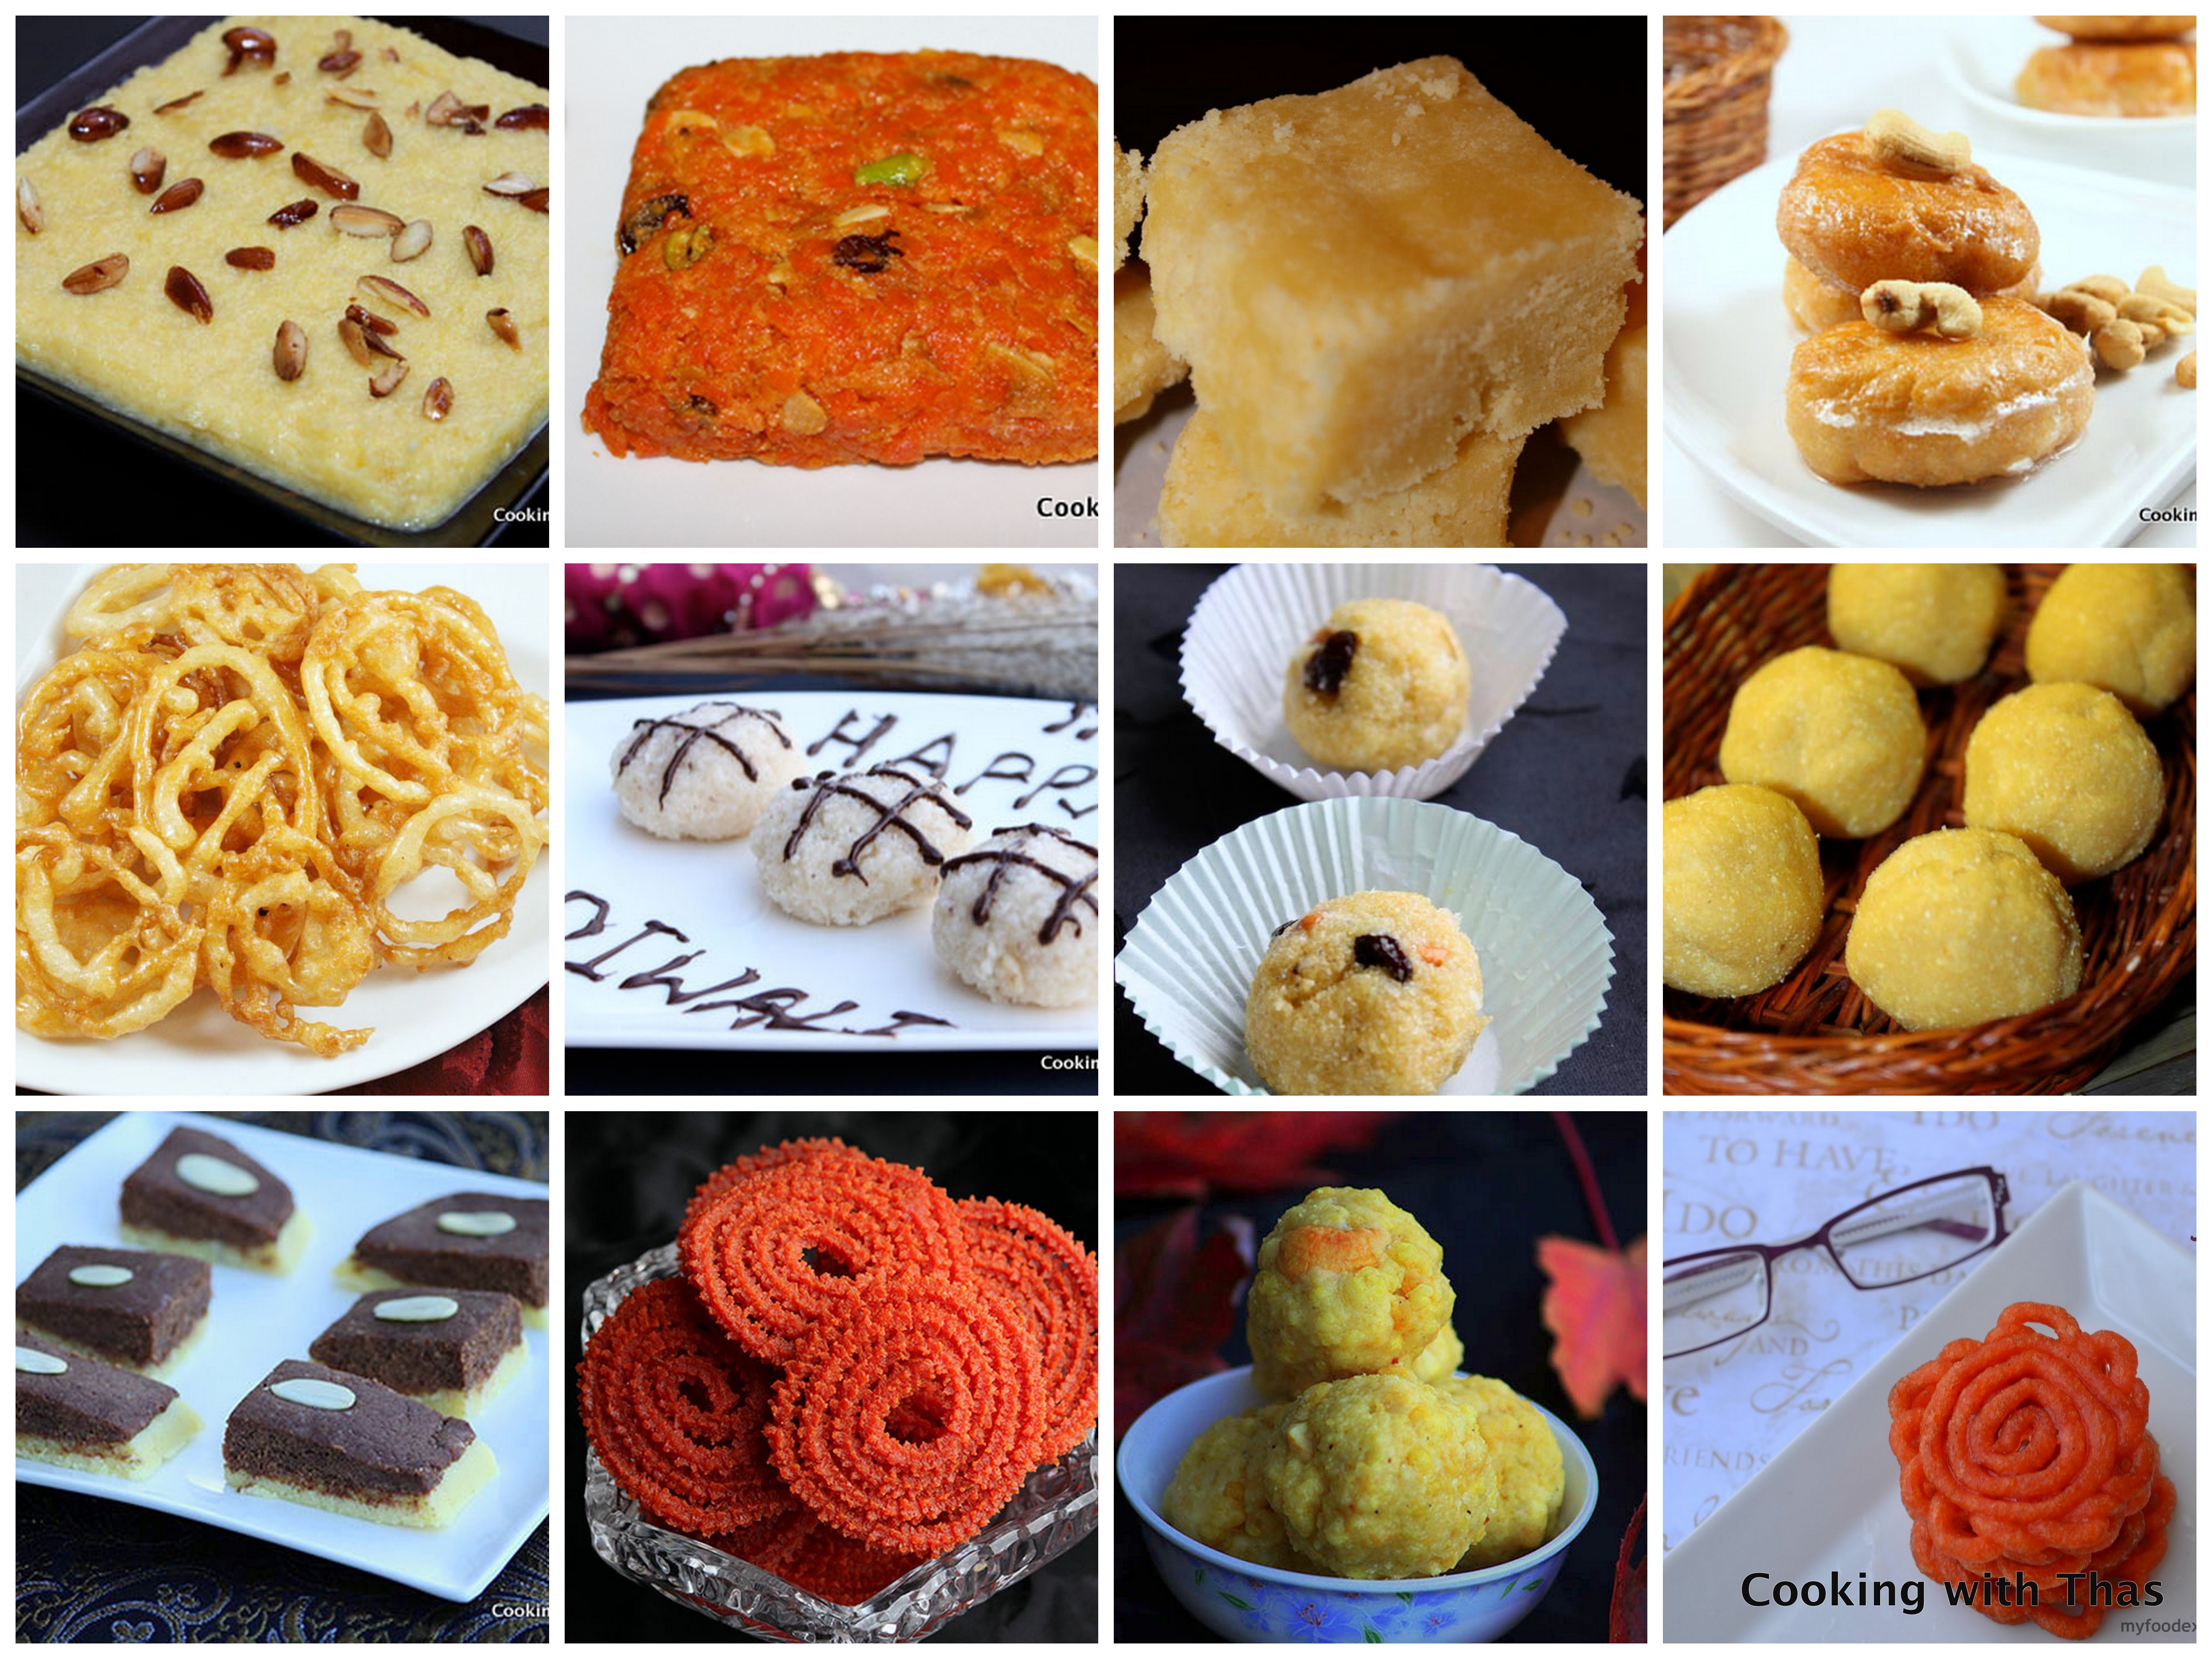 Diwali Recipes